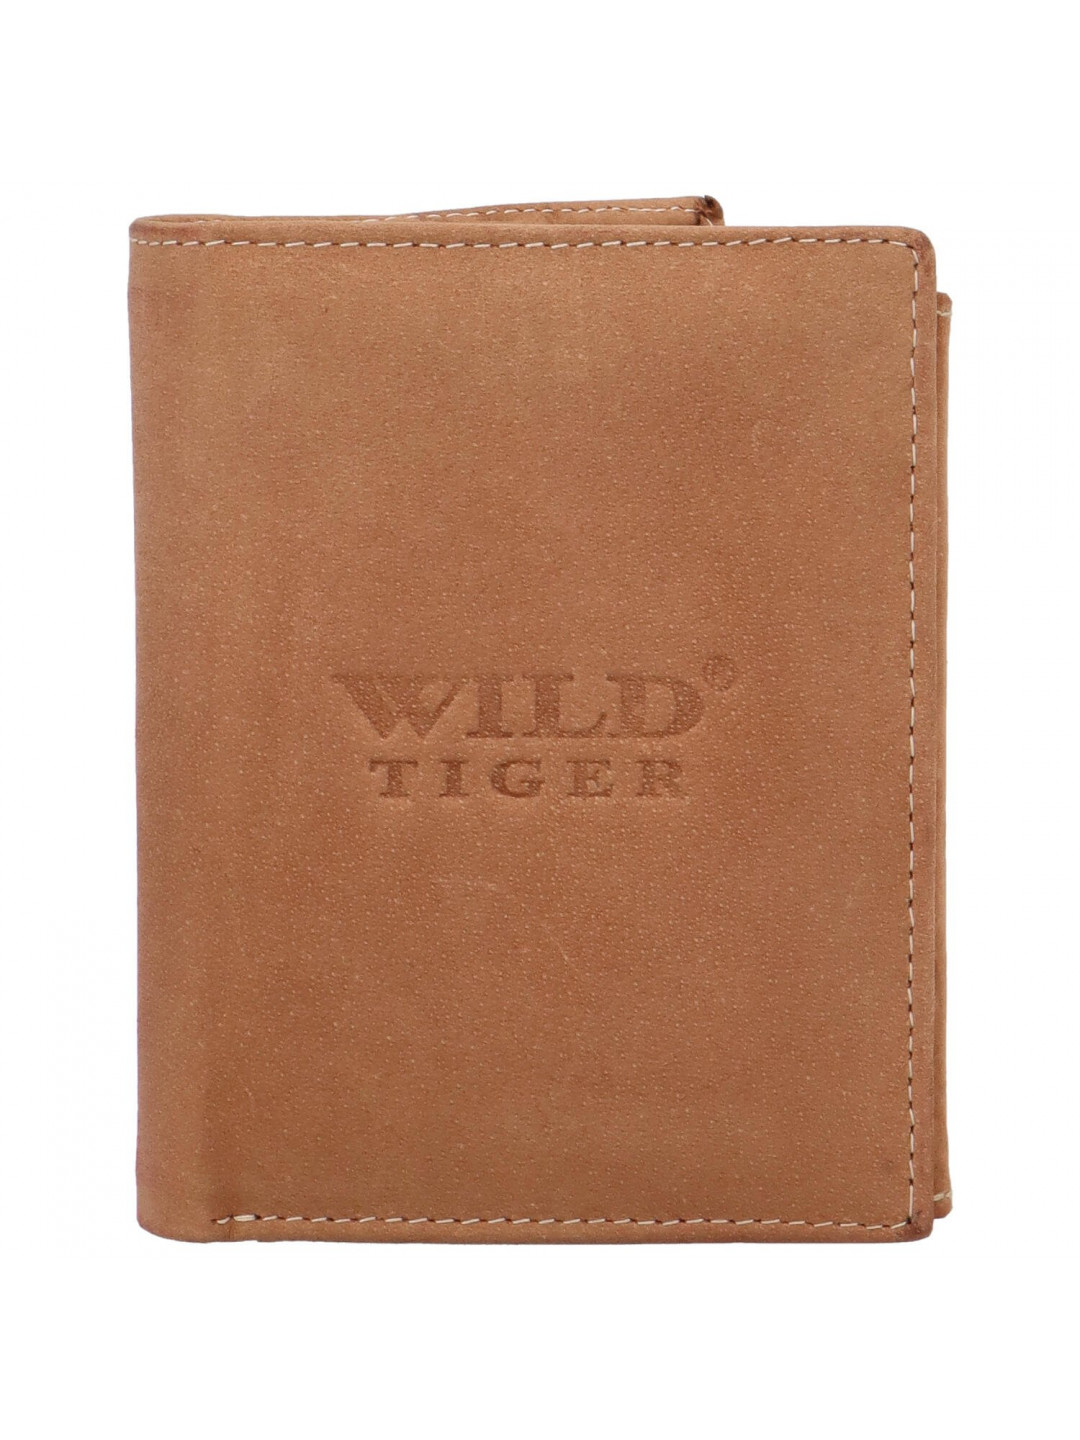 Pánská kožená peněženka světle hnědá – Wild Tiger Stefan